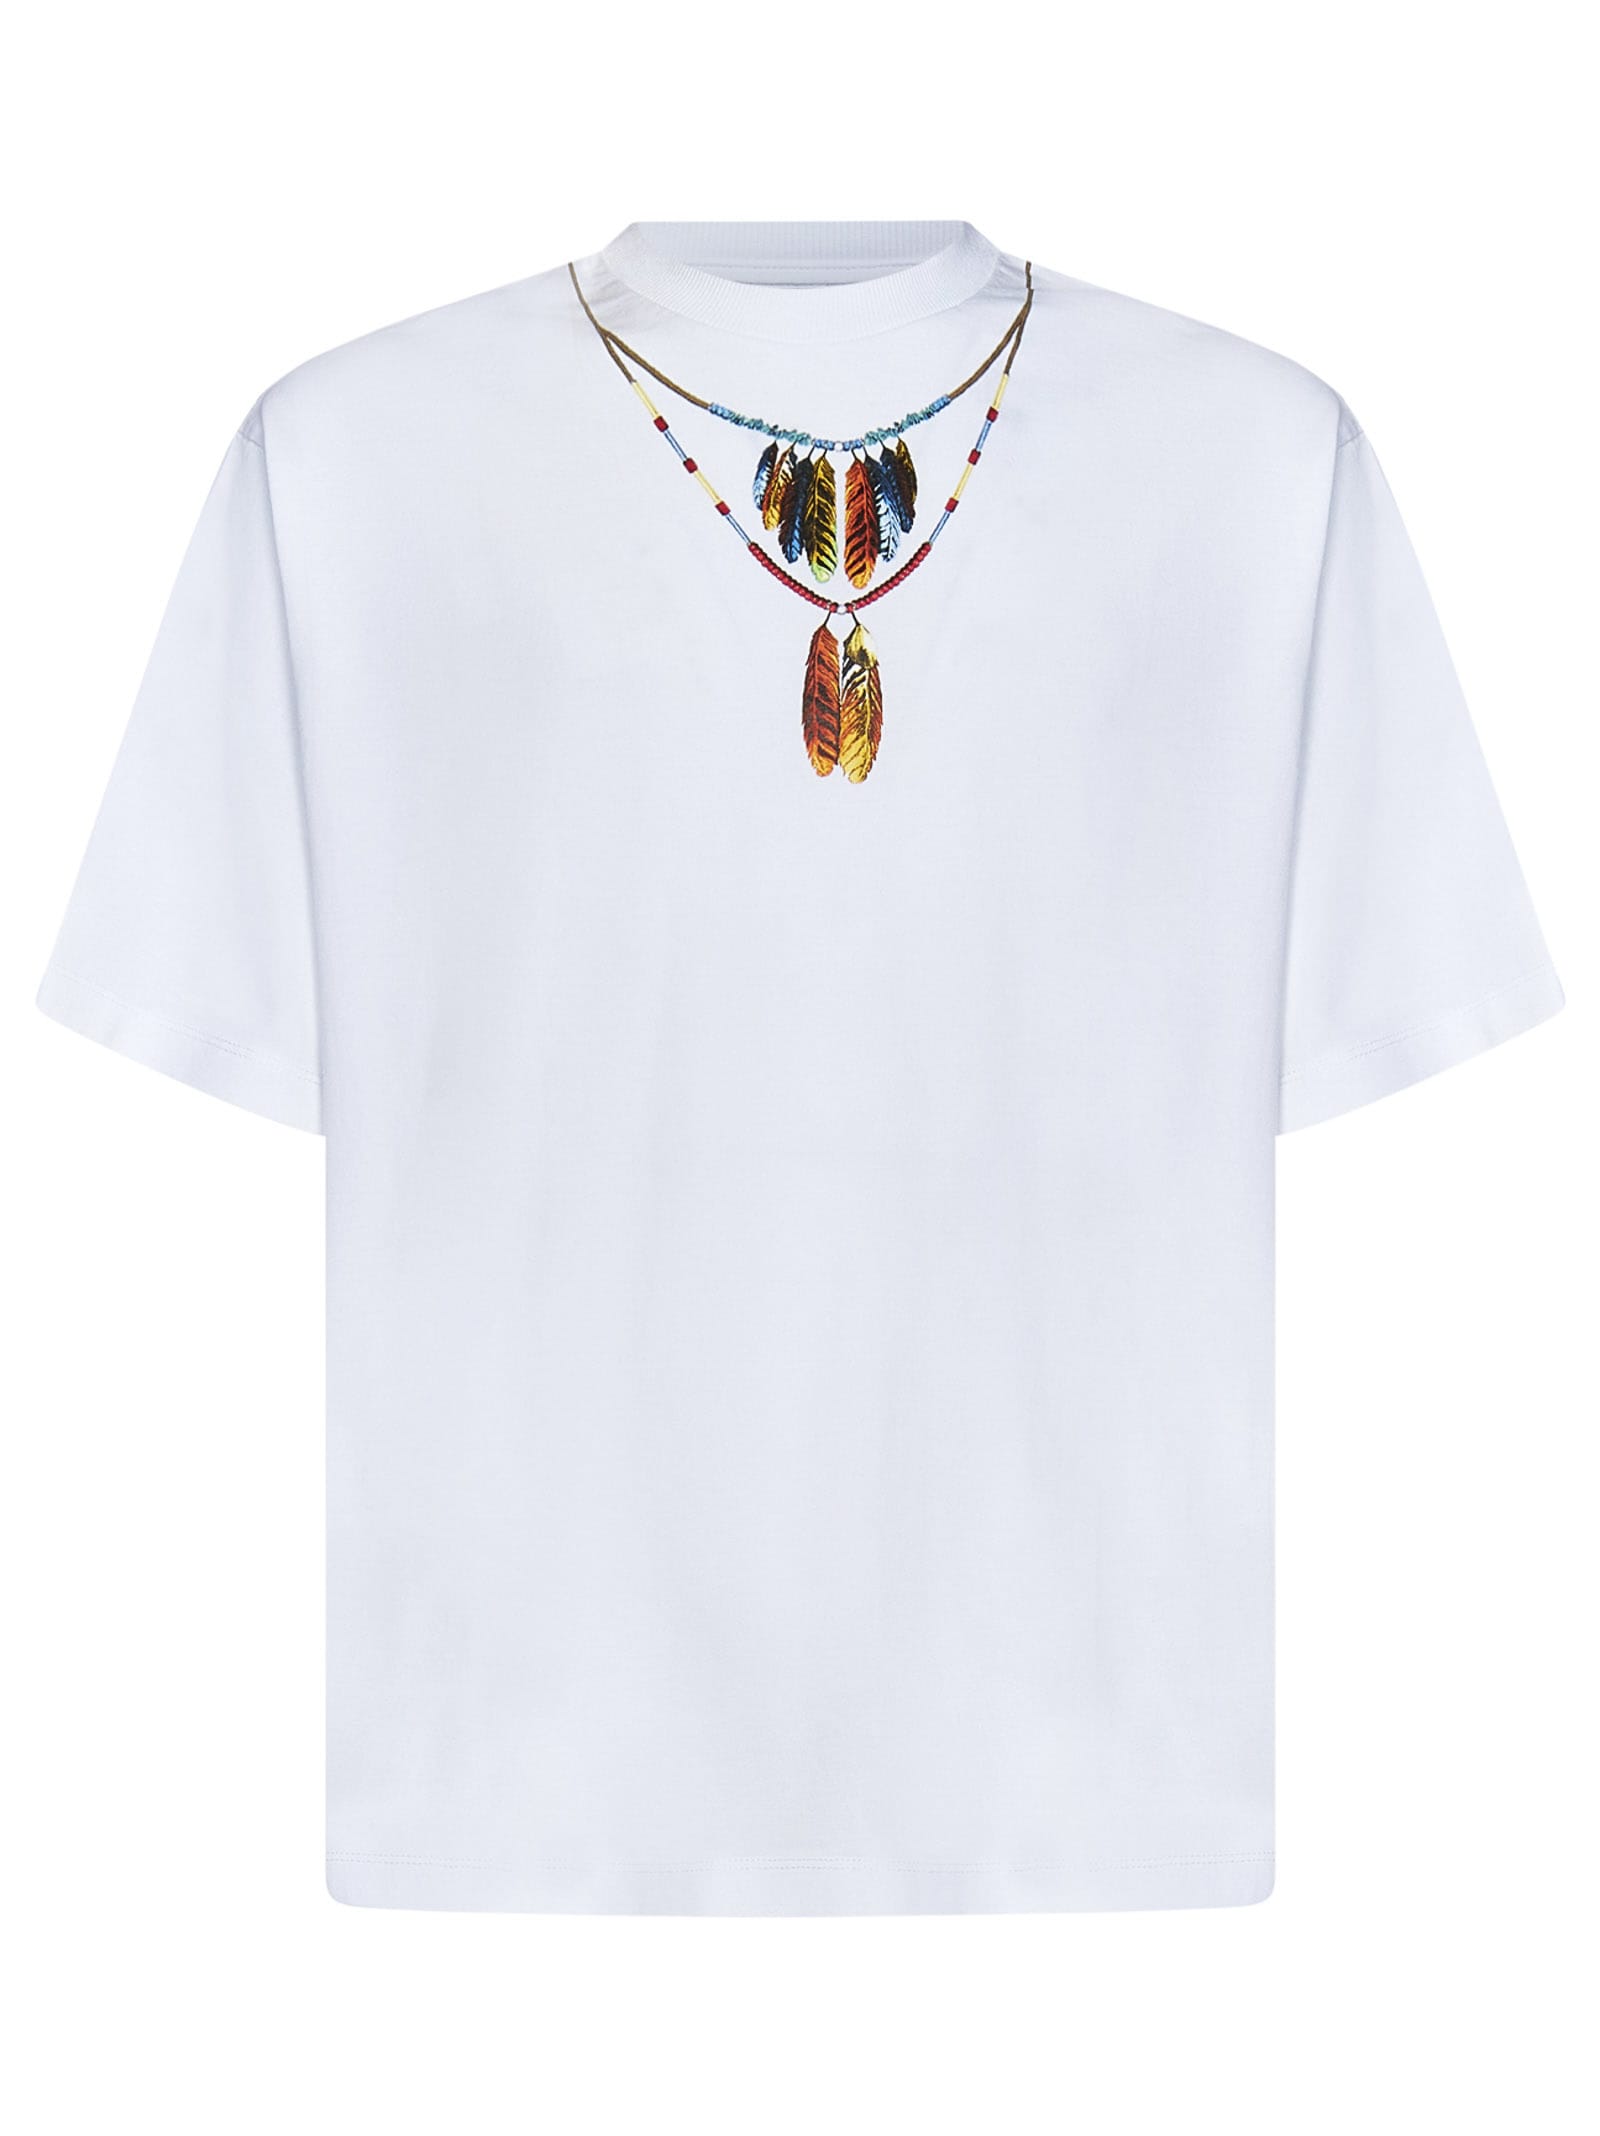 Marcelo Burlon Feathers Necklace T-shirt